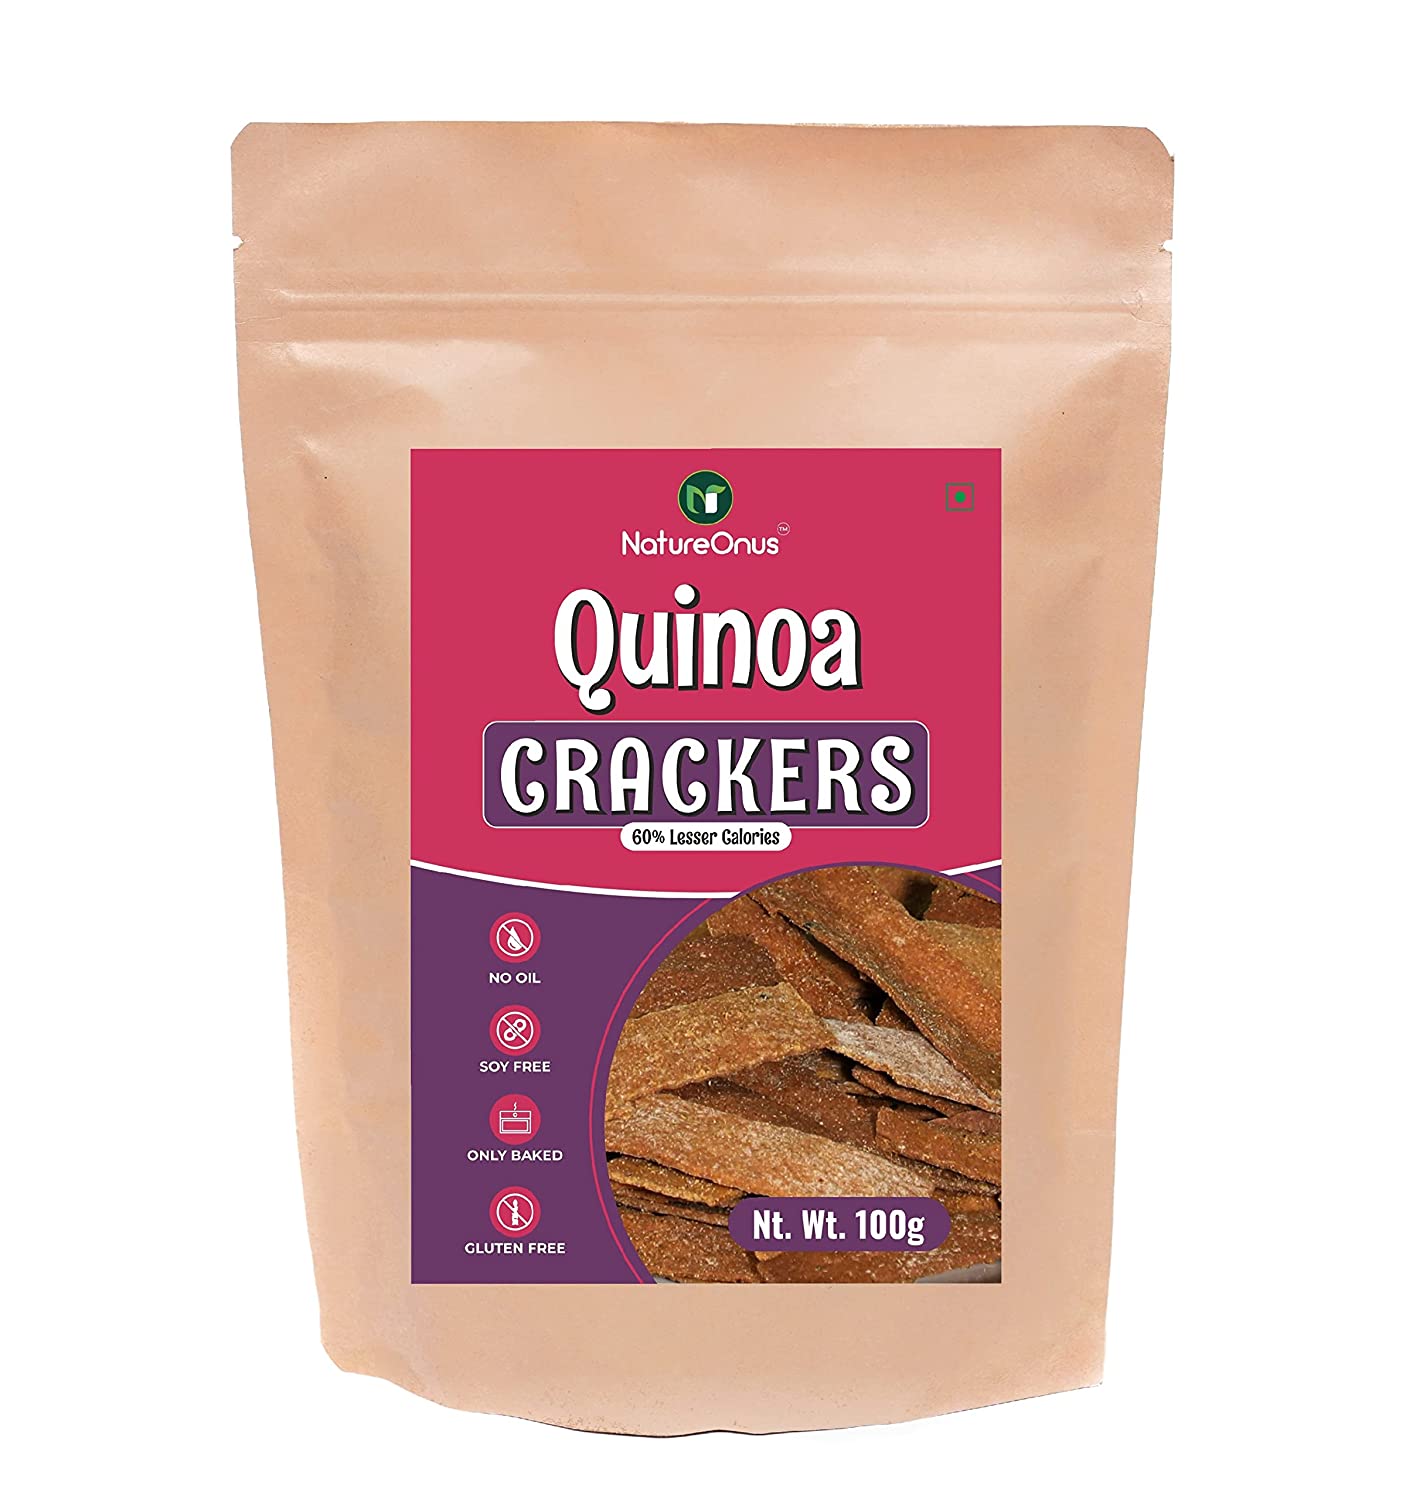 NatureOnus Quinoa Crackers Image